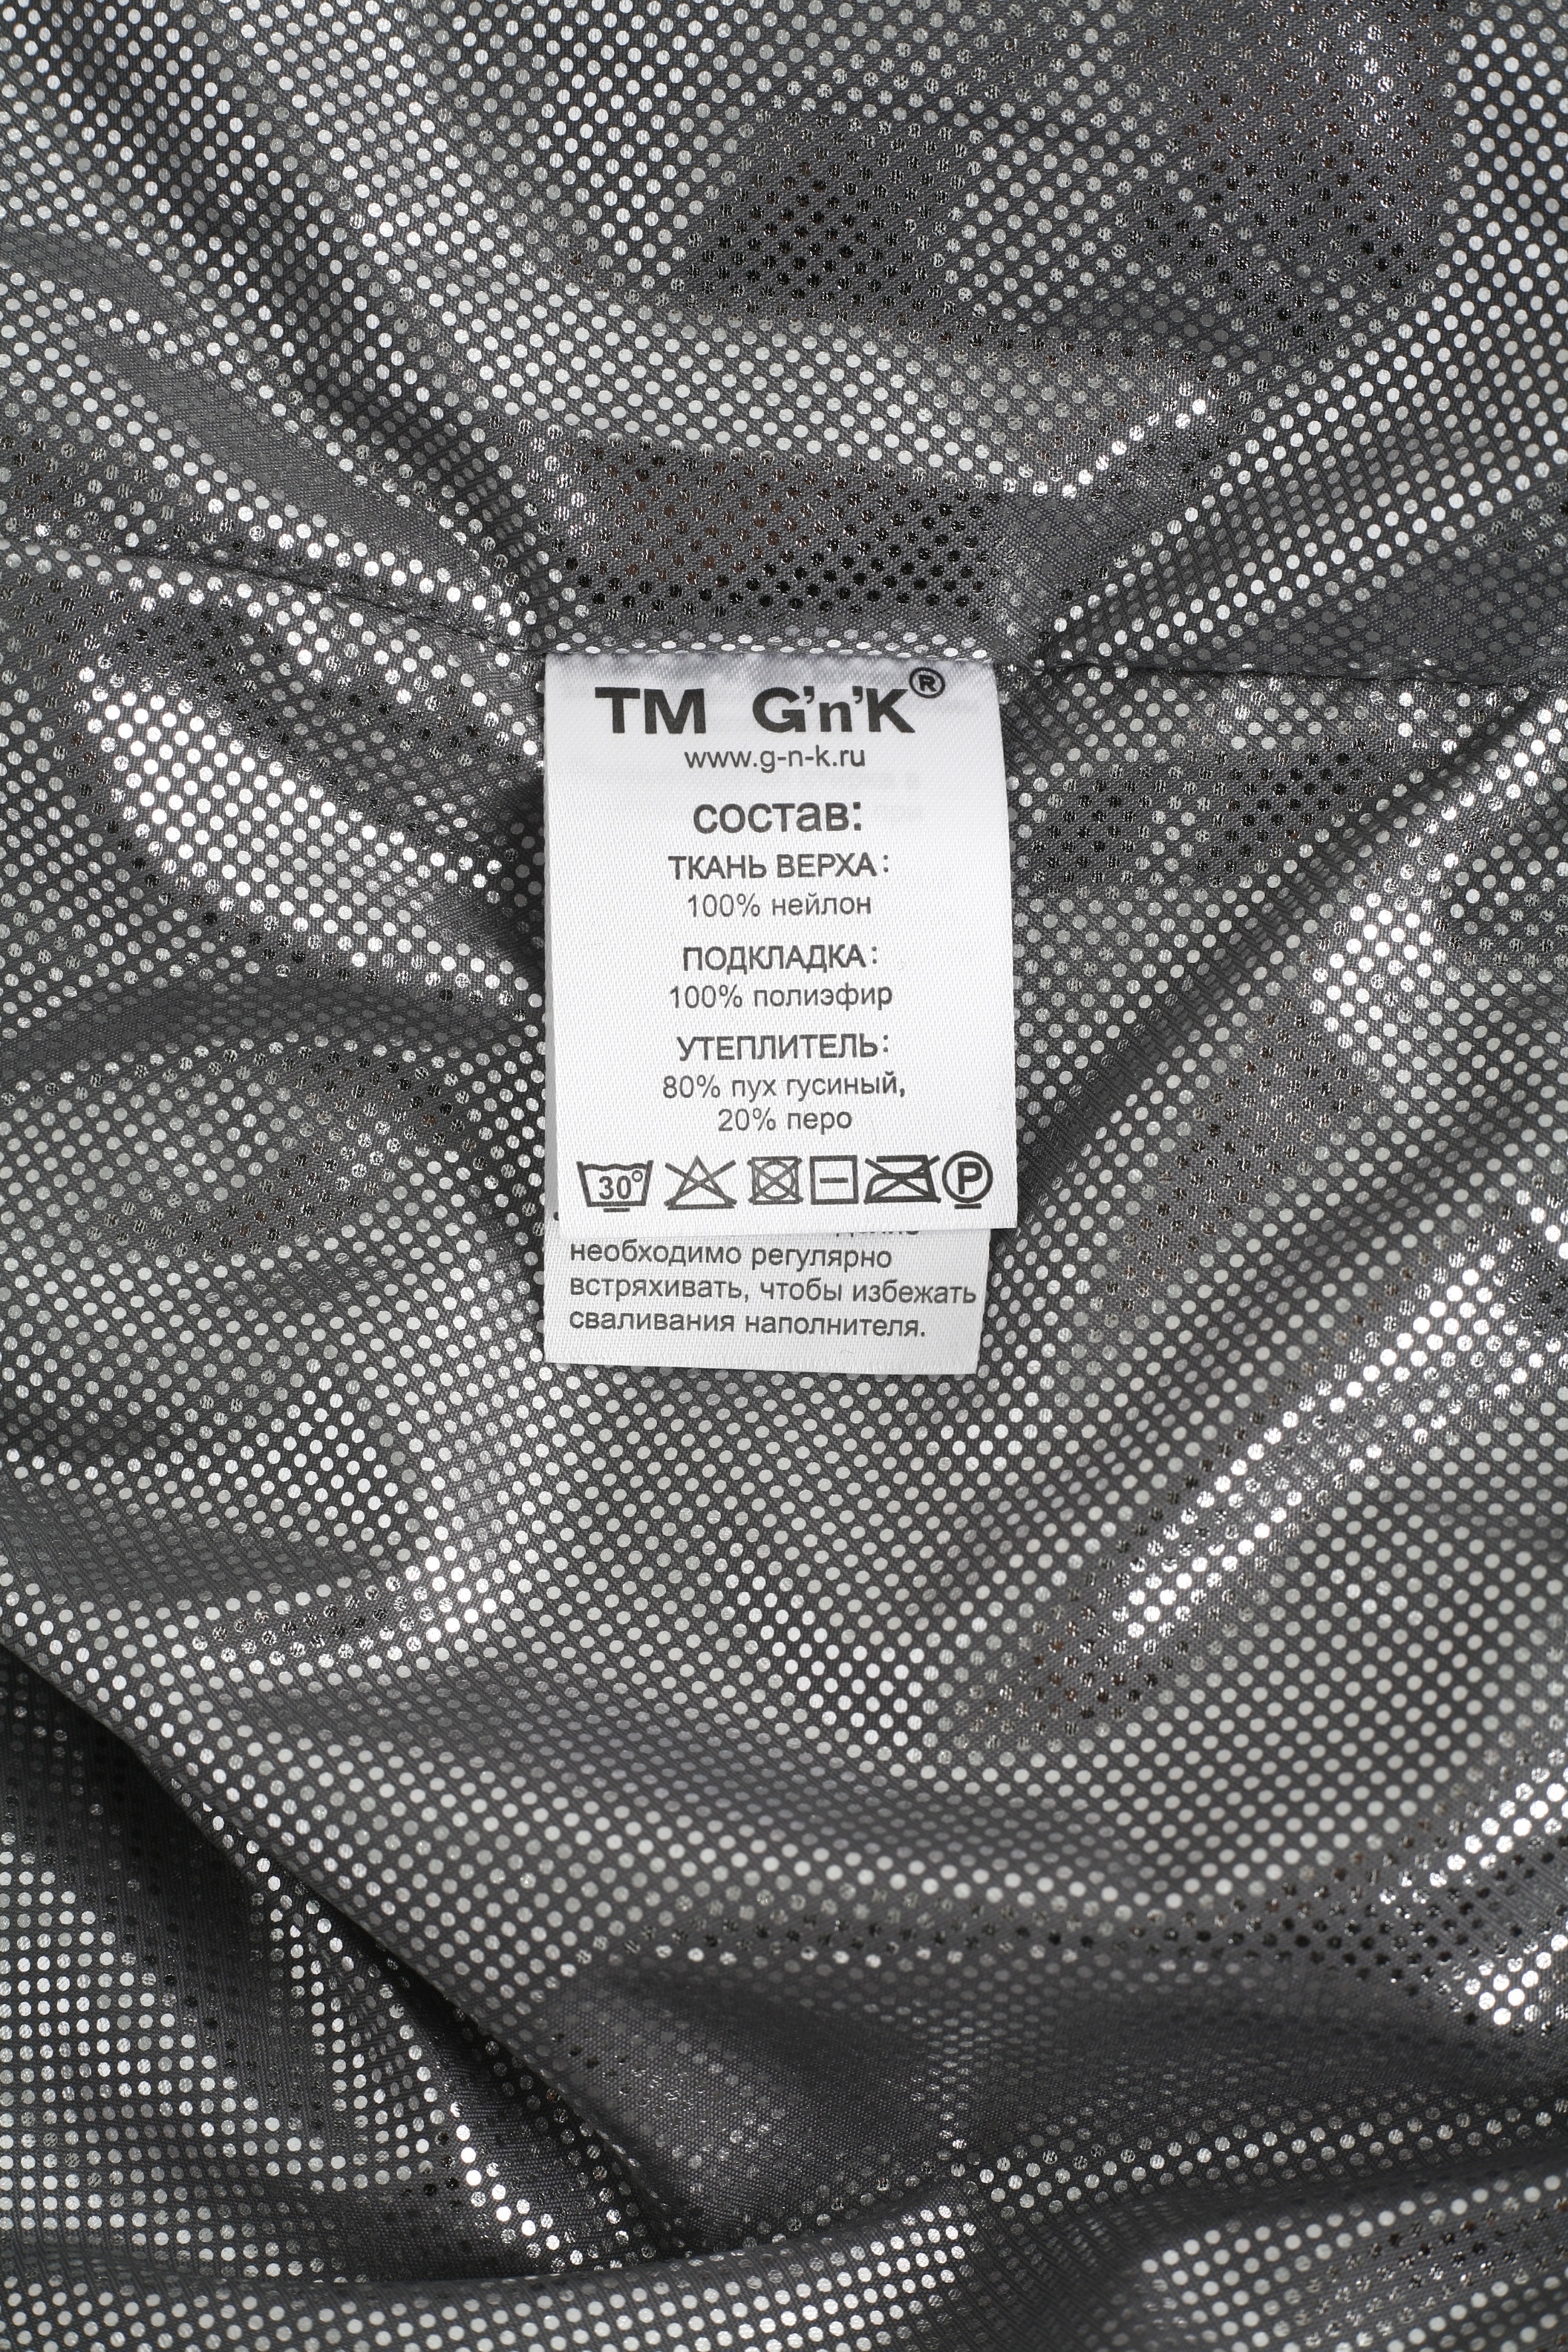 Комплект утепленный из 2 изд. G'N'K 2490265, цвет черный, размер 6 6124519280273 - фото 6